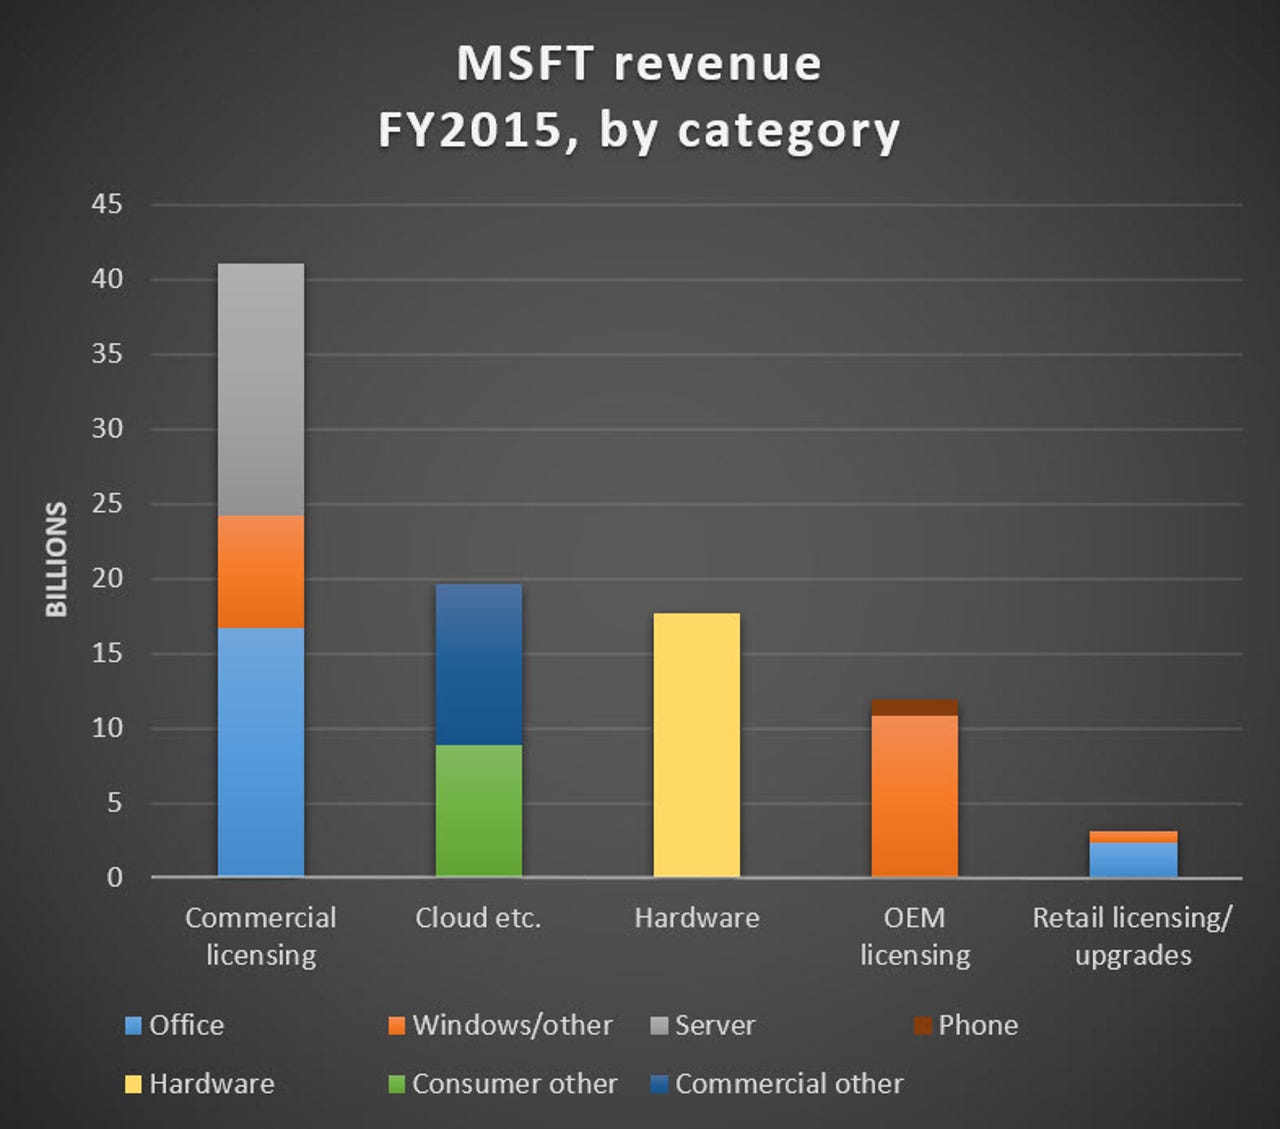 msft-revenue-by-category-fy2015.jpg